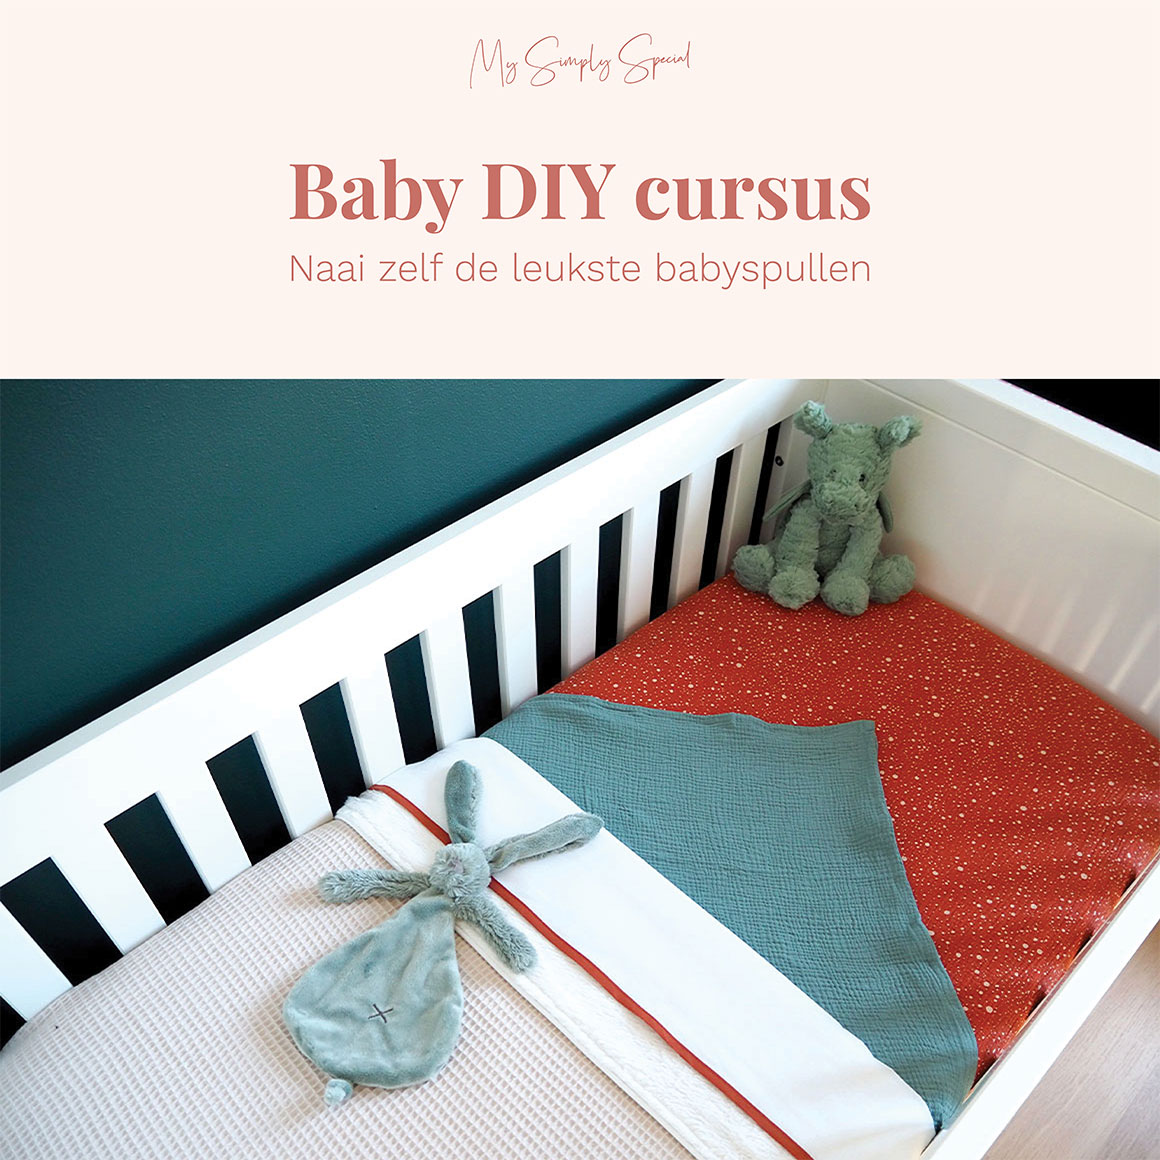 Baby DIY cursus